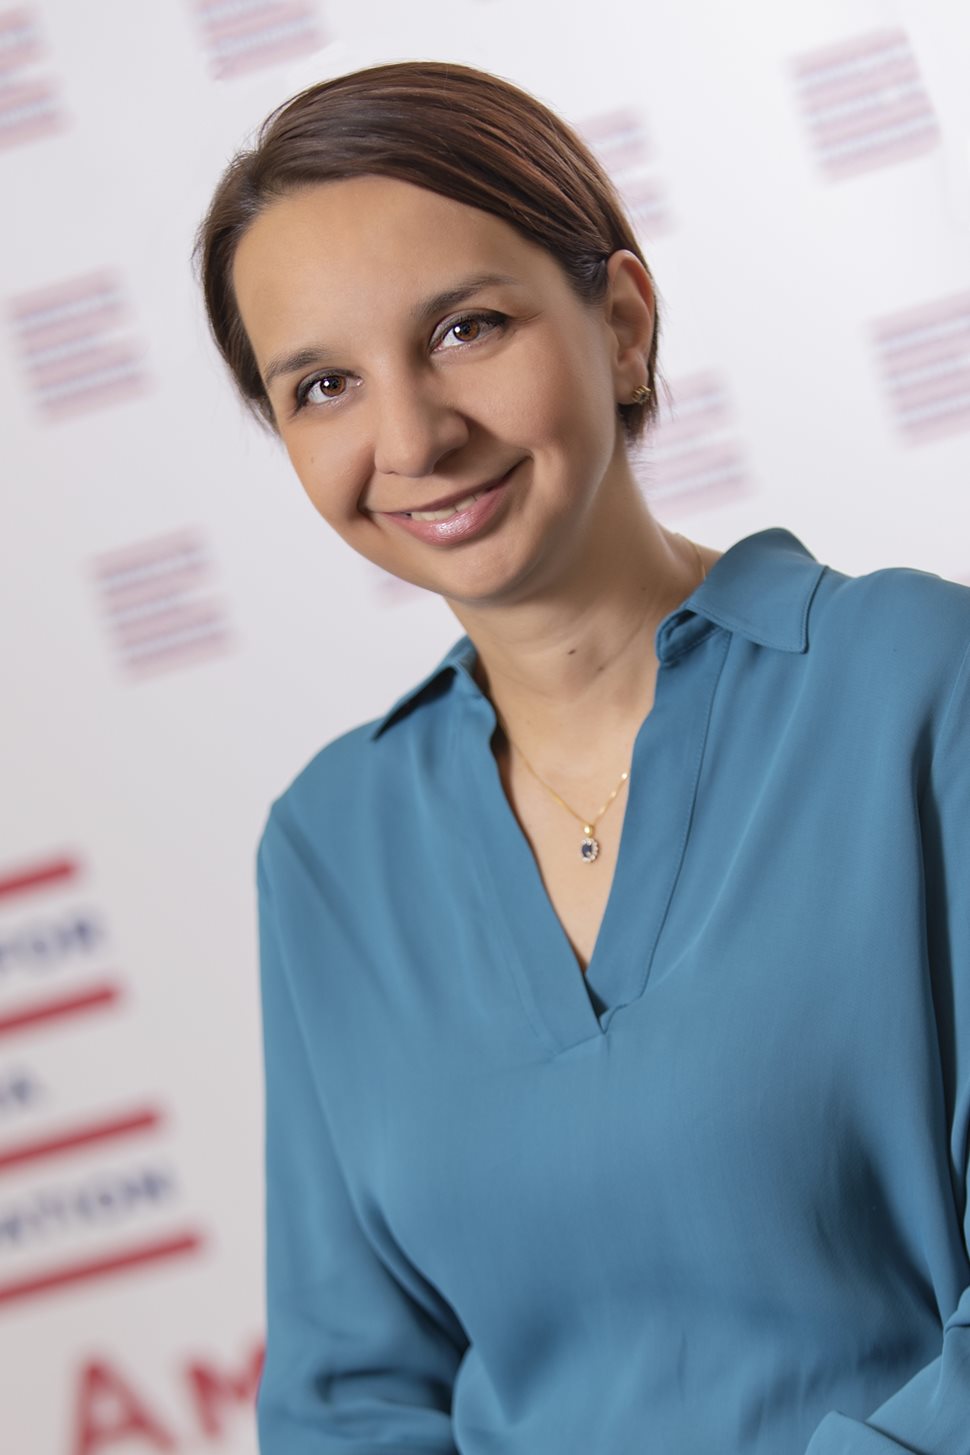 
Елена Хаджисотирова има бакалавърска степен от Софийския университет “Св. Климент Охридски” и магистърска степен от университета в Мейн, САЩ. Тя е работила за UNICEF офисите в България и Женева.